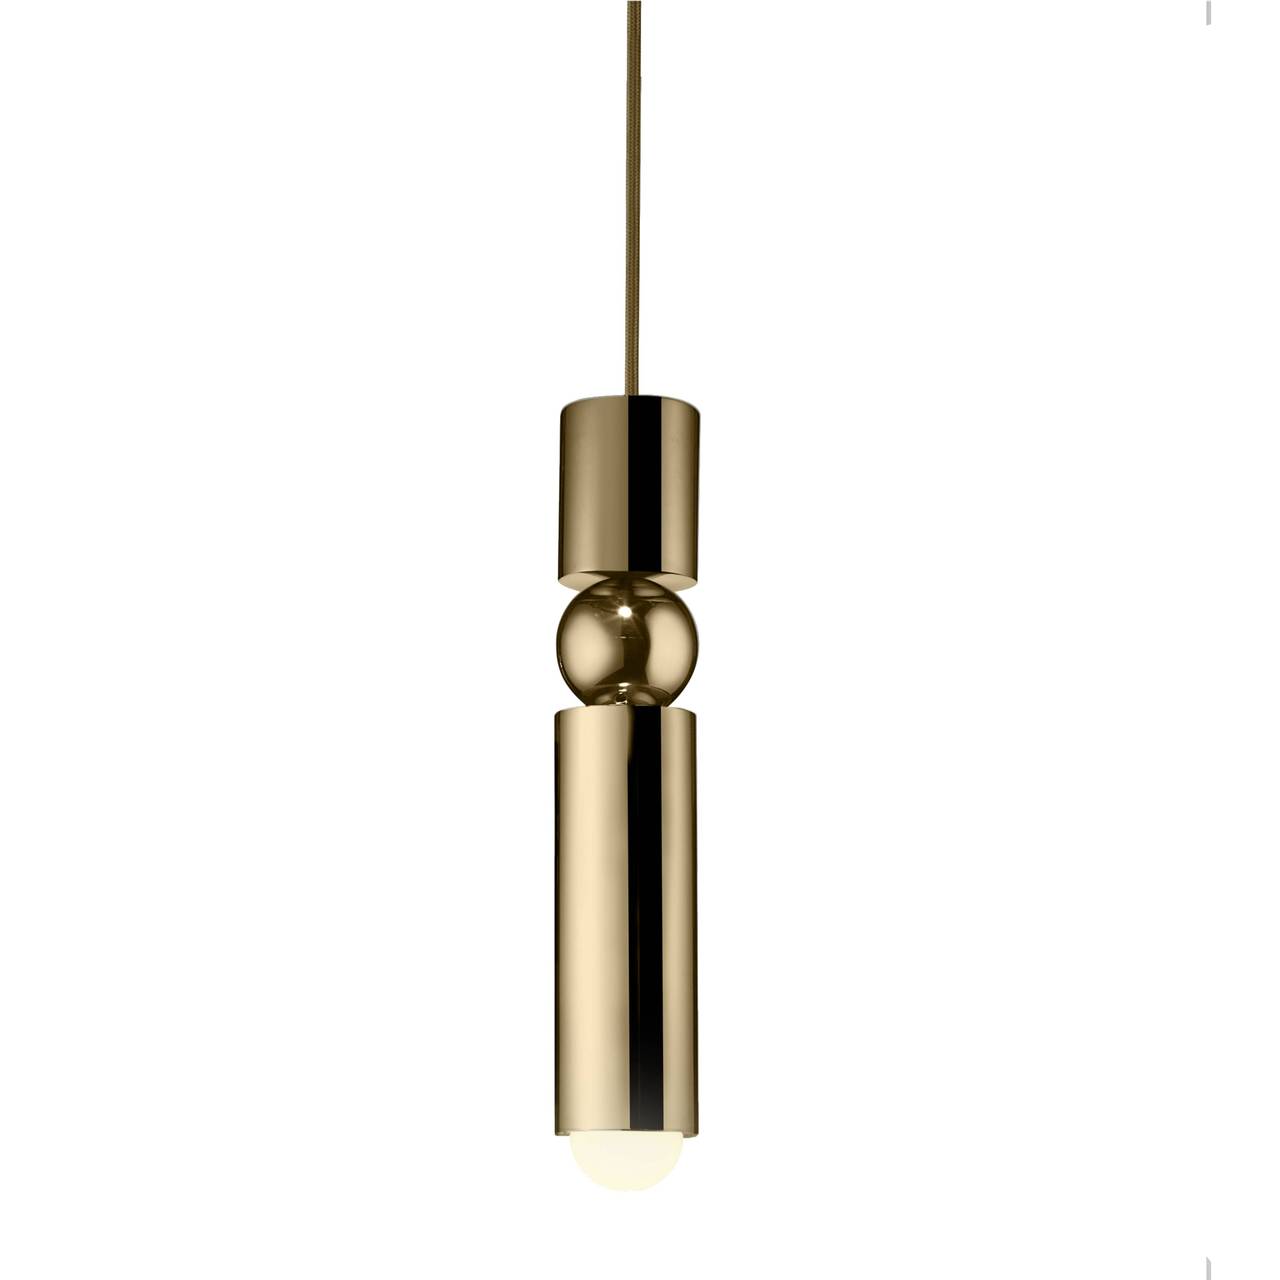 Lee Broom - Fulcrum light Hanglamp Top Merken Winkel